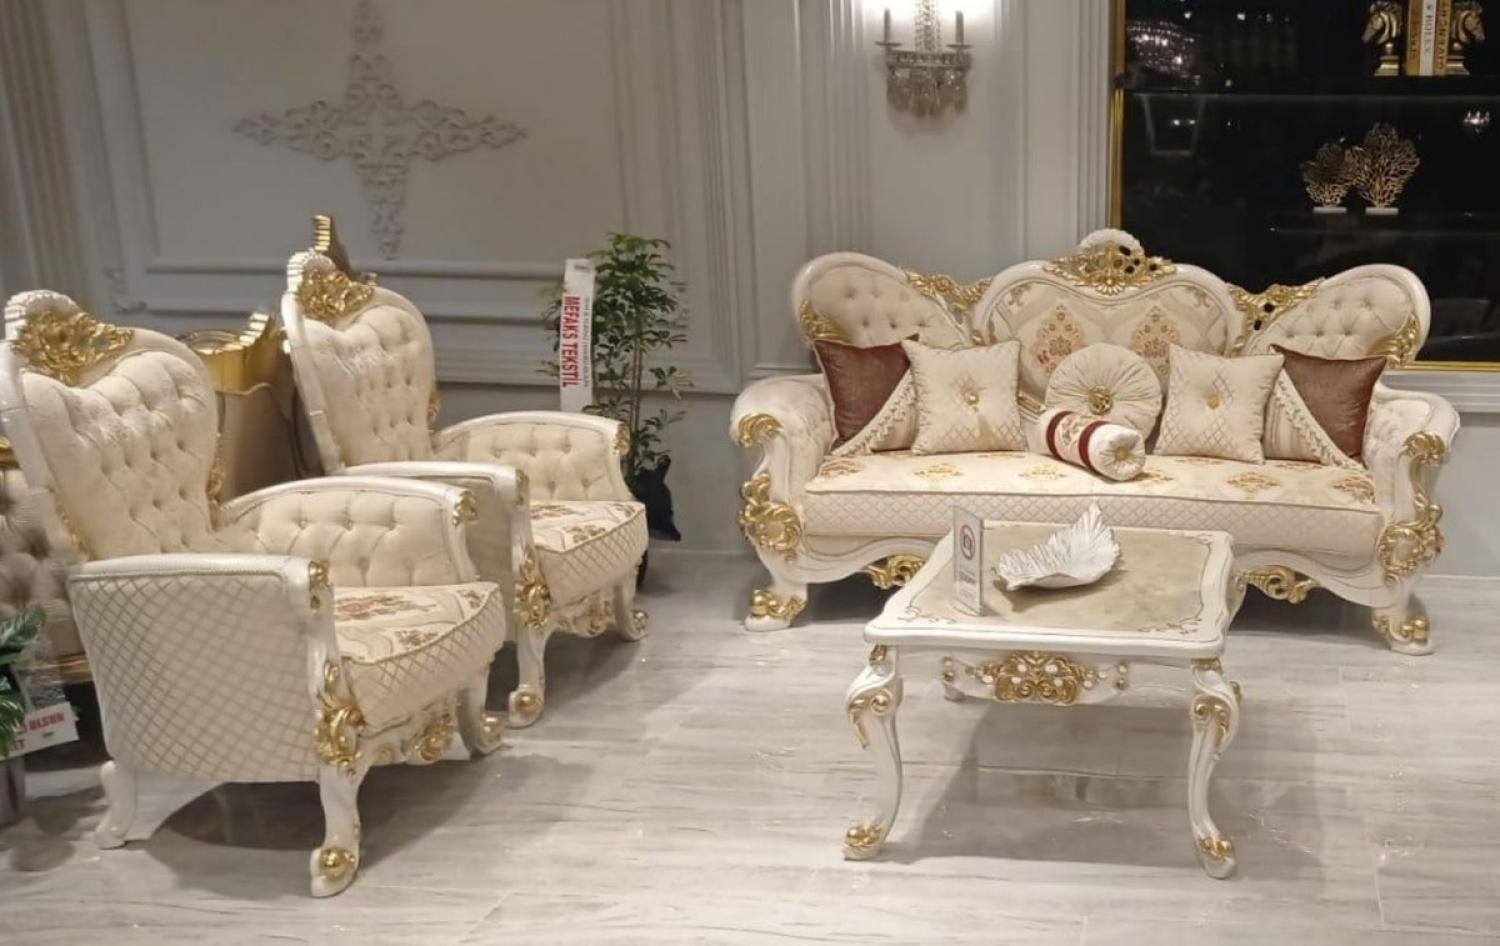 Casa Padrino Luxus Barock Wohnzimmer Set Beige / Weiß / Gold - 2 Barock Sofas mit Muster & 2 Barock Sessel mit Muster & 1 Barock Couchtisch - Prunkvolle Barock Wohnzimmer Möbel Bild 1